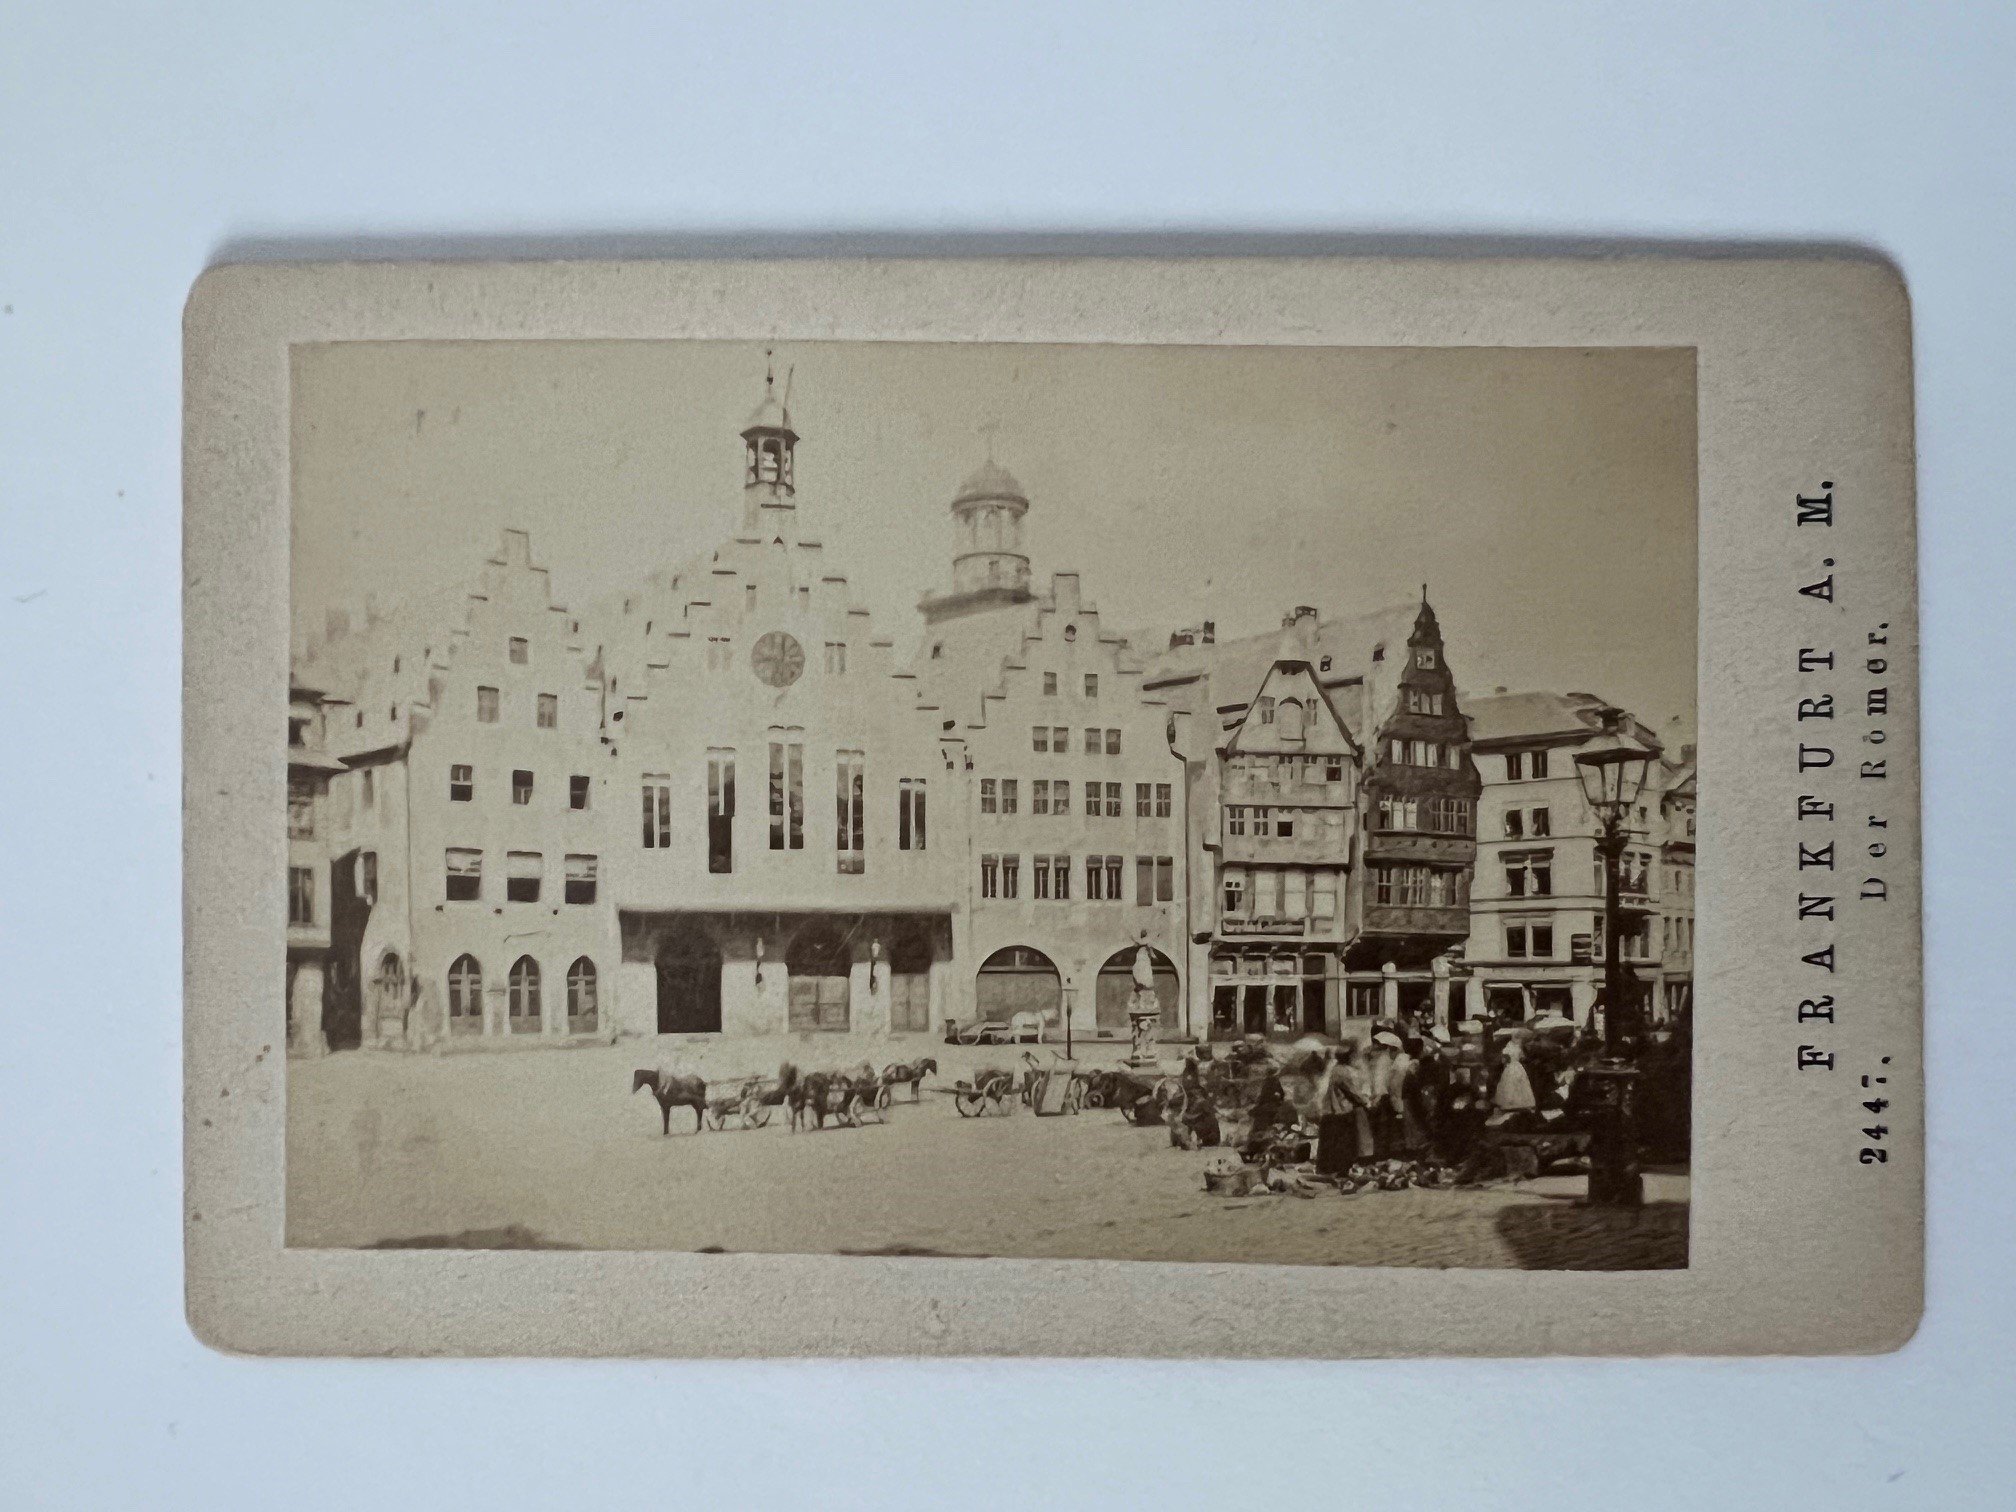 CdV, Unbekannter Fotograf, Frankfurt, Der Römer, ca. 1876. (Taunus-Rhein-Main - Regionalgeschichtliche Sammlung Dr. Stefan Naas CC BY-NC-SA)